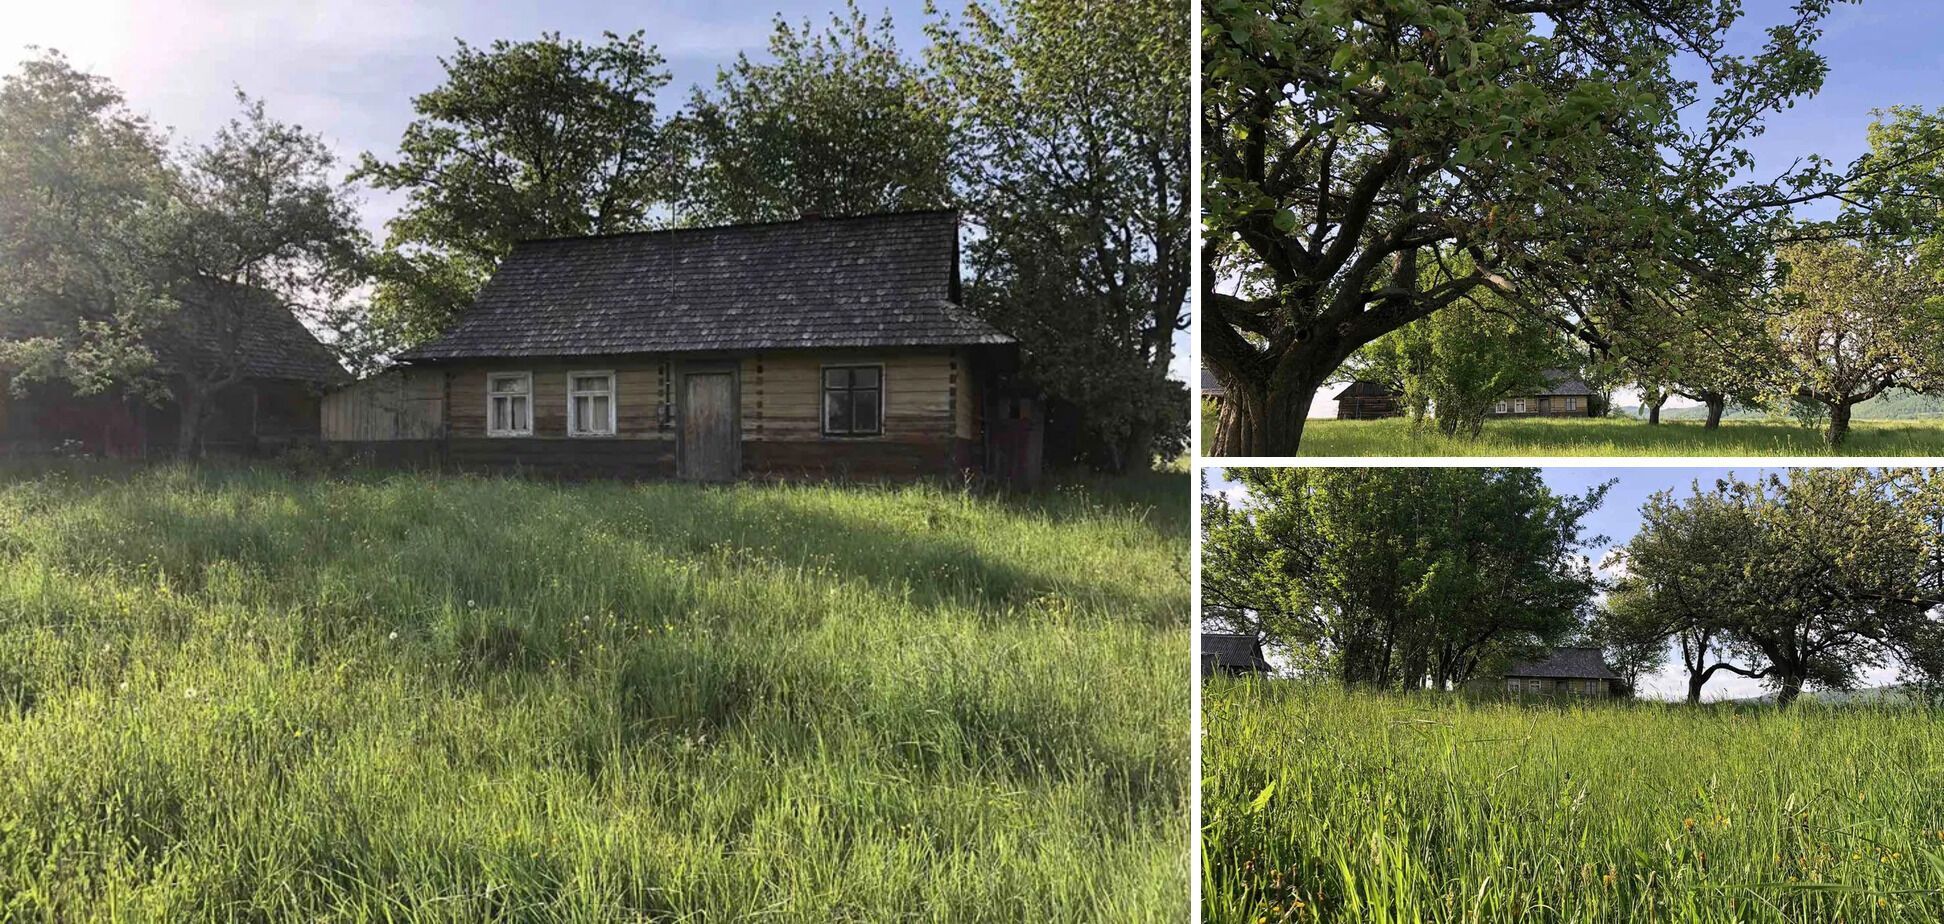 Дом в Карпатах за 8 000$ долларов: украинцам показали как выглядит дом в лесу